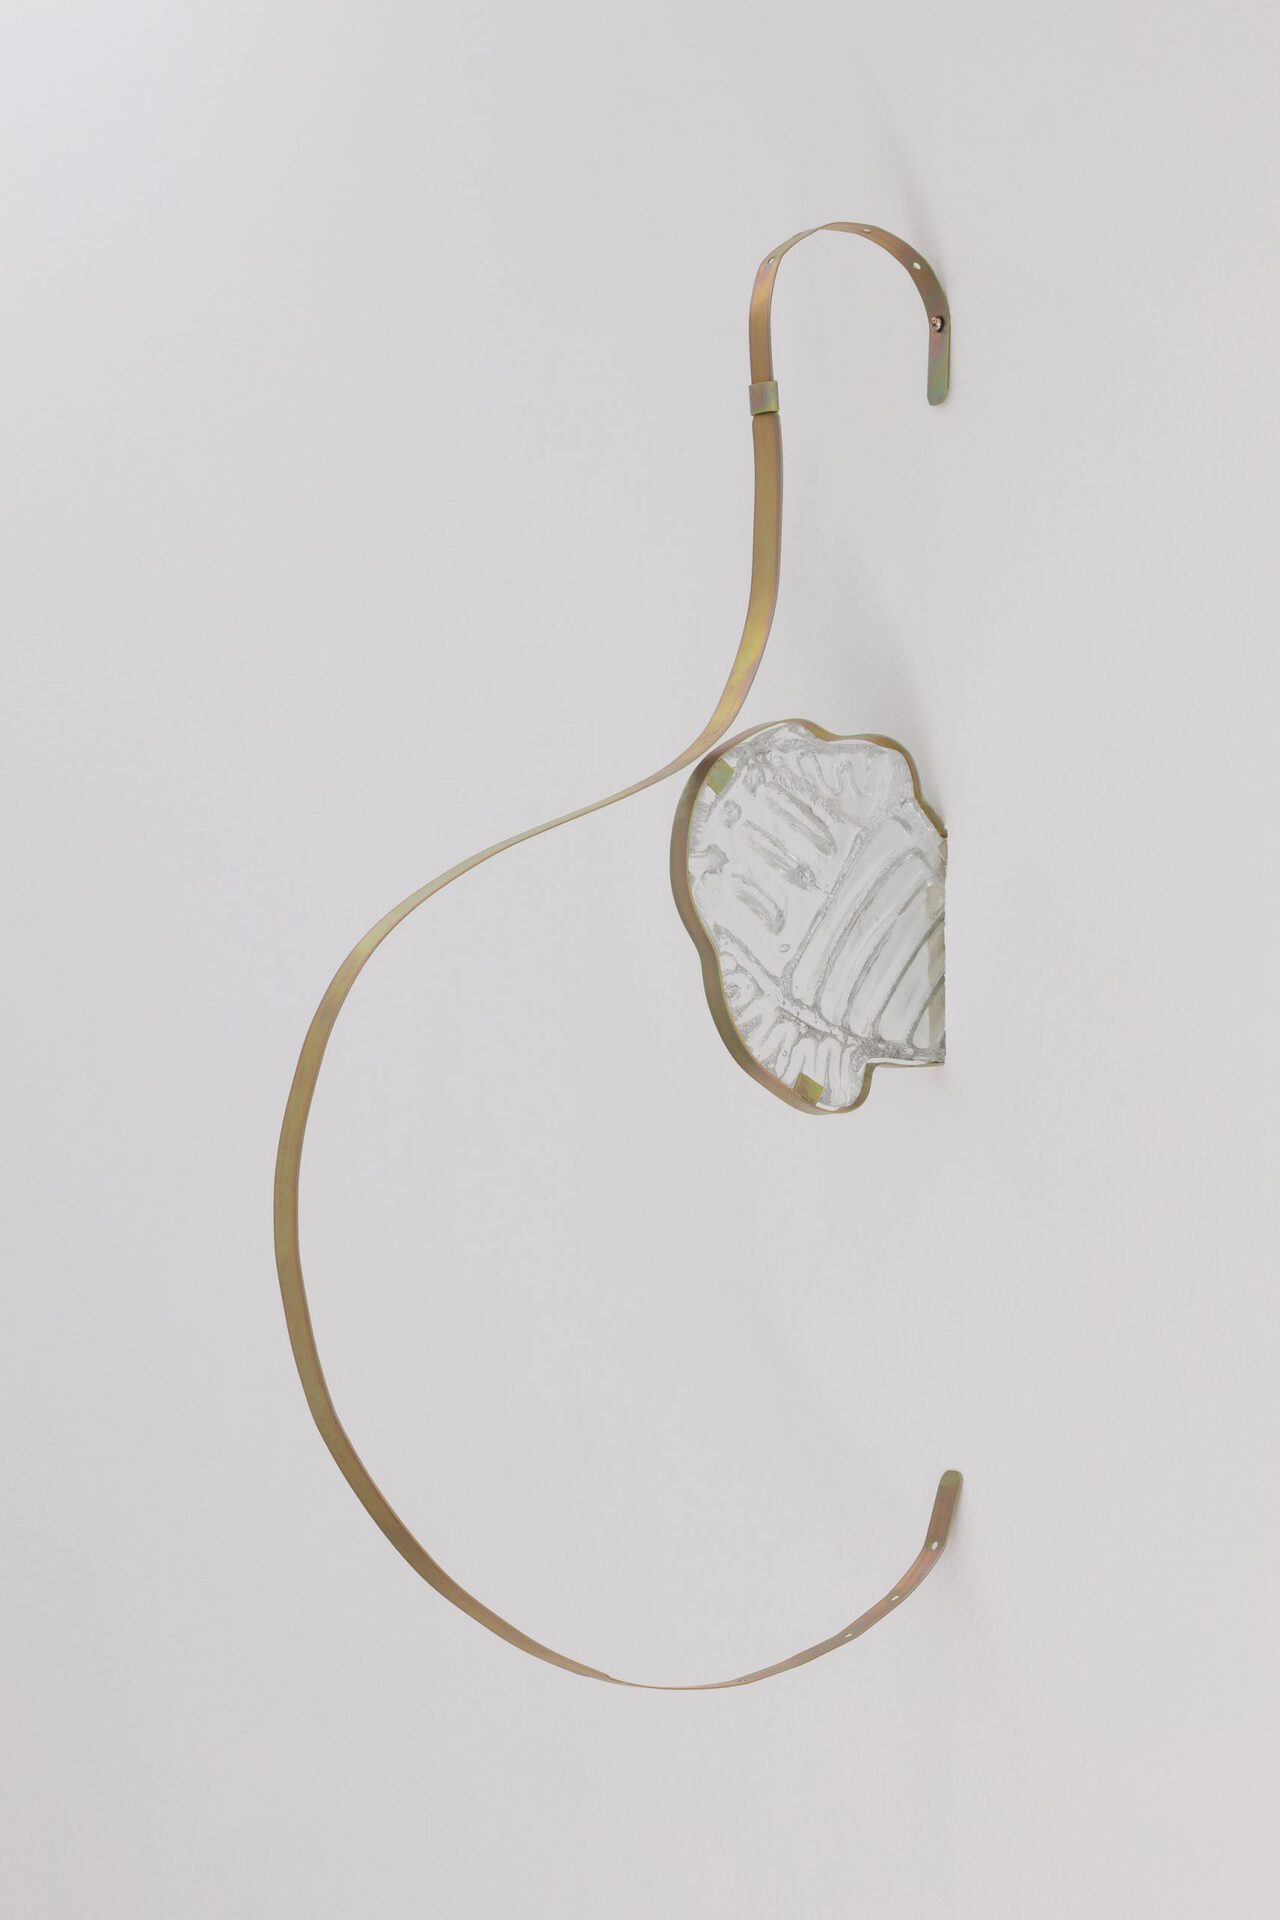 Andreia Santana. Tools for Living. 2021 Glass and bichromated iron. 137 cm x 100 cm x 100 cm